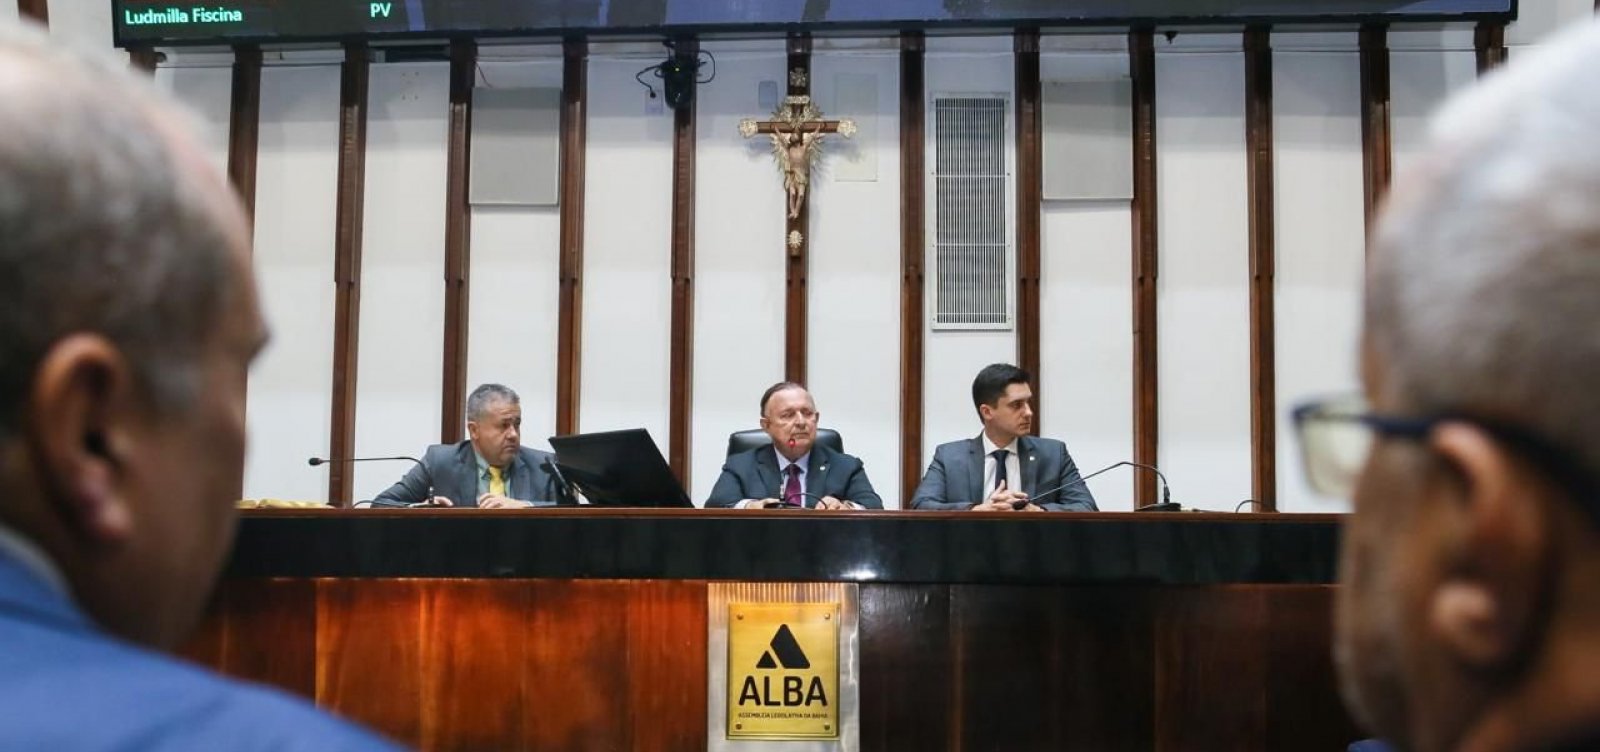 Após deputado baiano ser acusado de chefiar milícia, Conselho de Ética da Alba é instalado